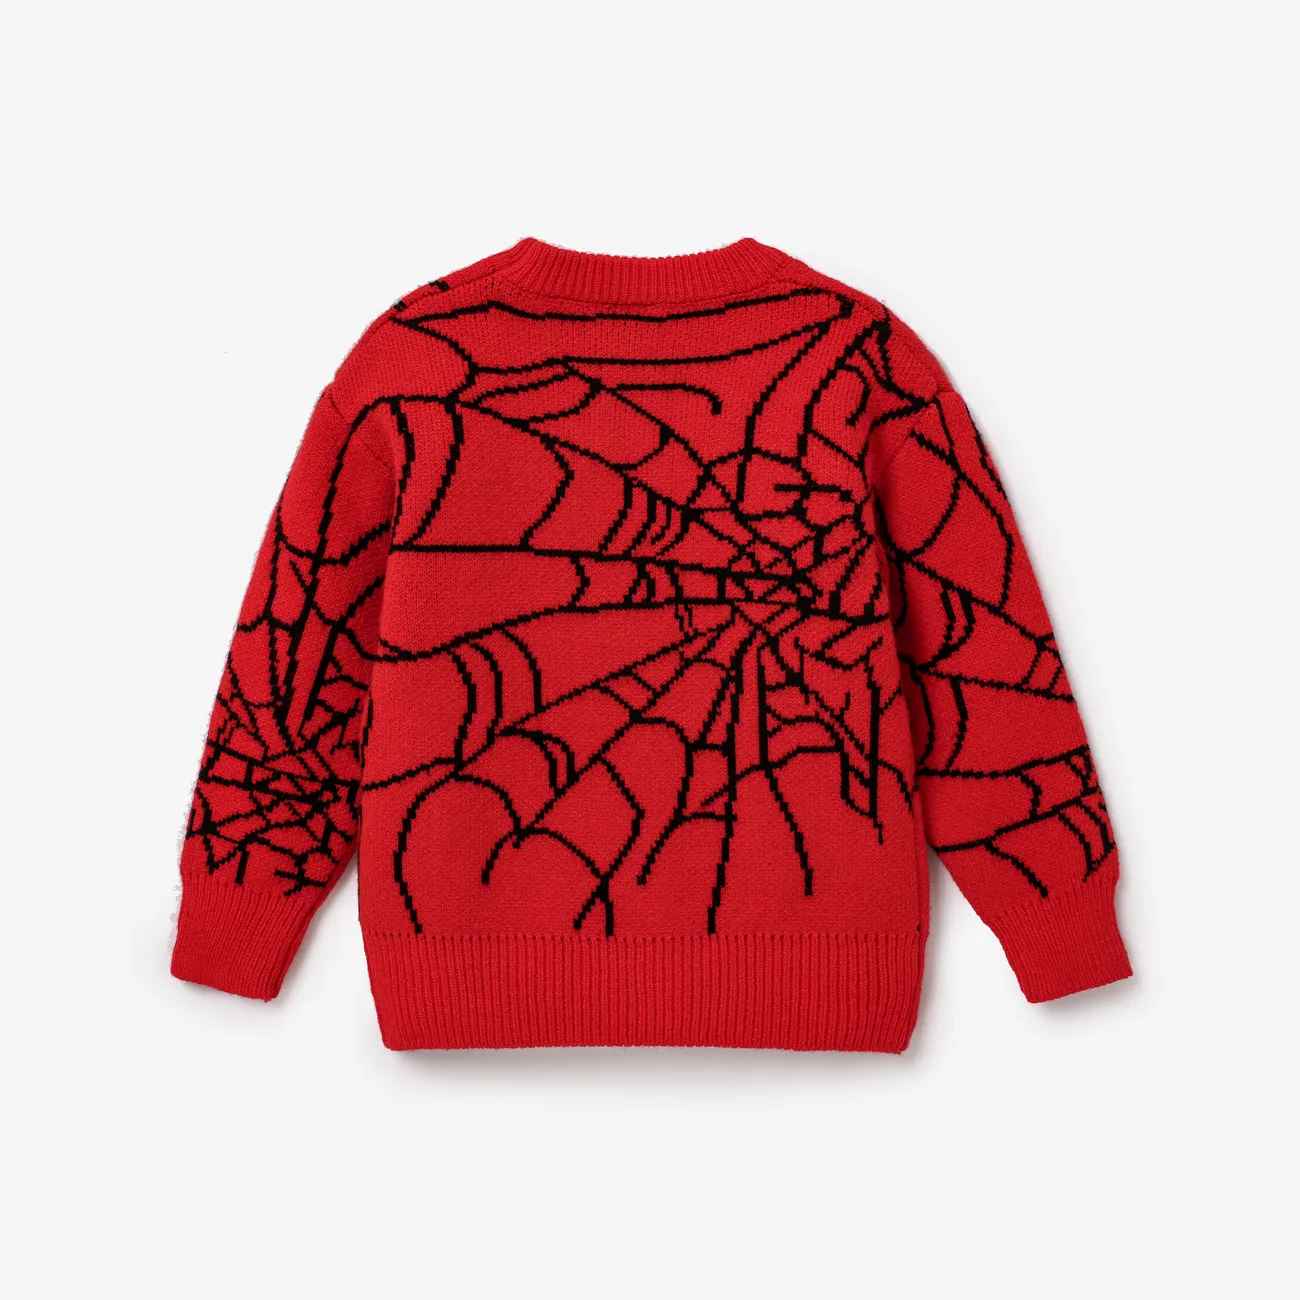 Criança / menino menino Geometric Spider Web Design Padrão Suéter Oversized Vermelho big image 1